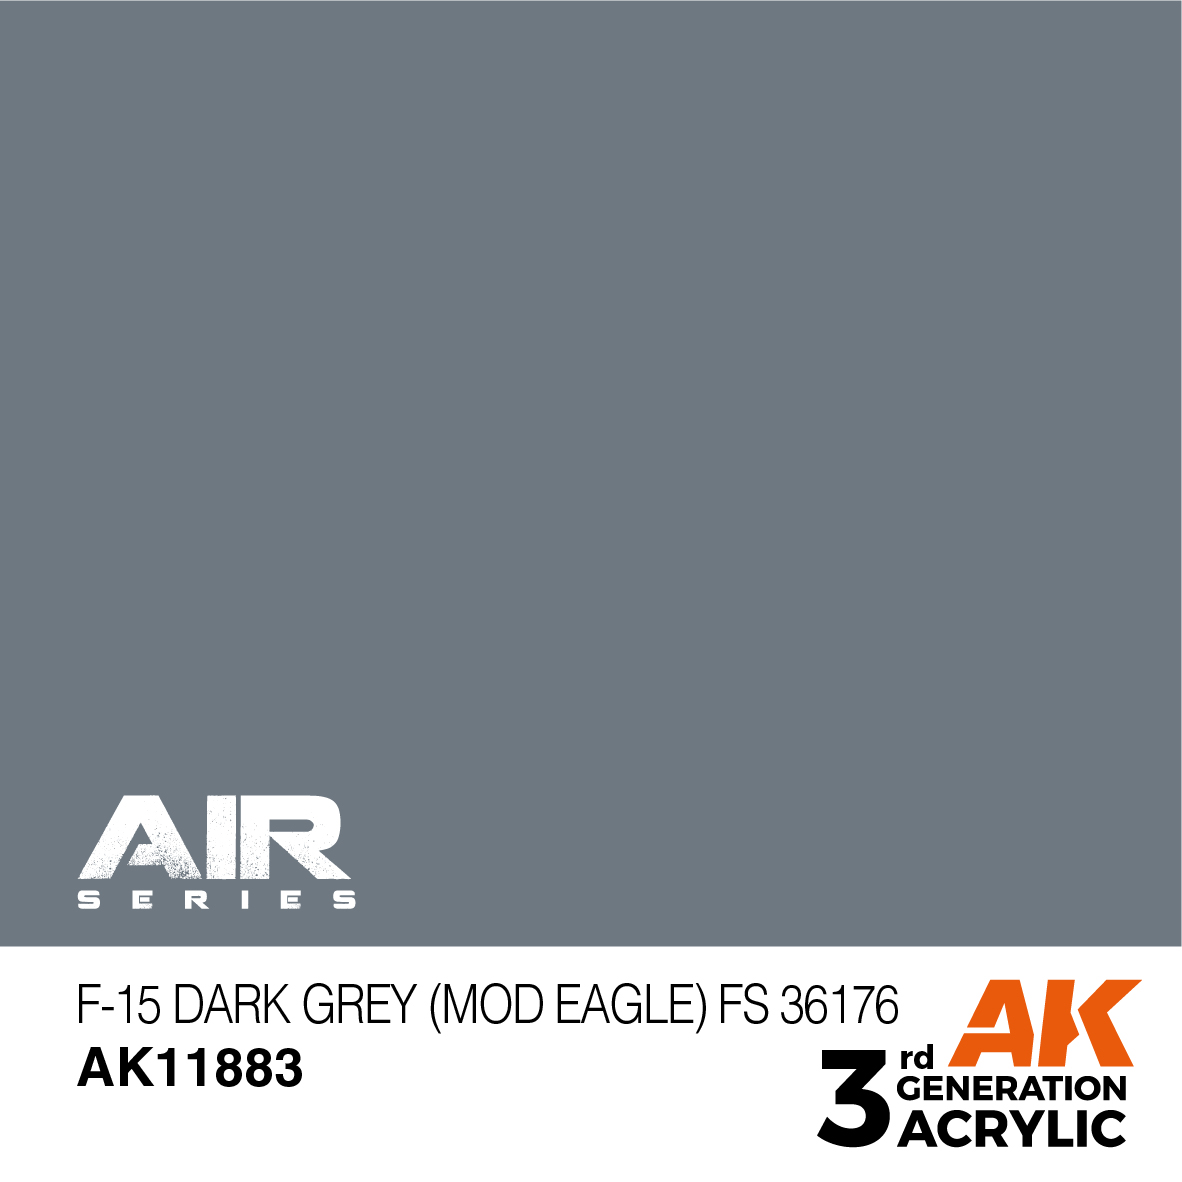 F-15 Dark Grey (Mod Eagle) FS 36176 – AIR